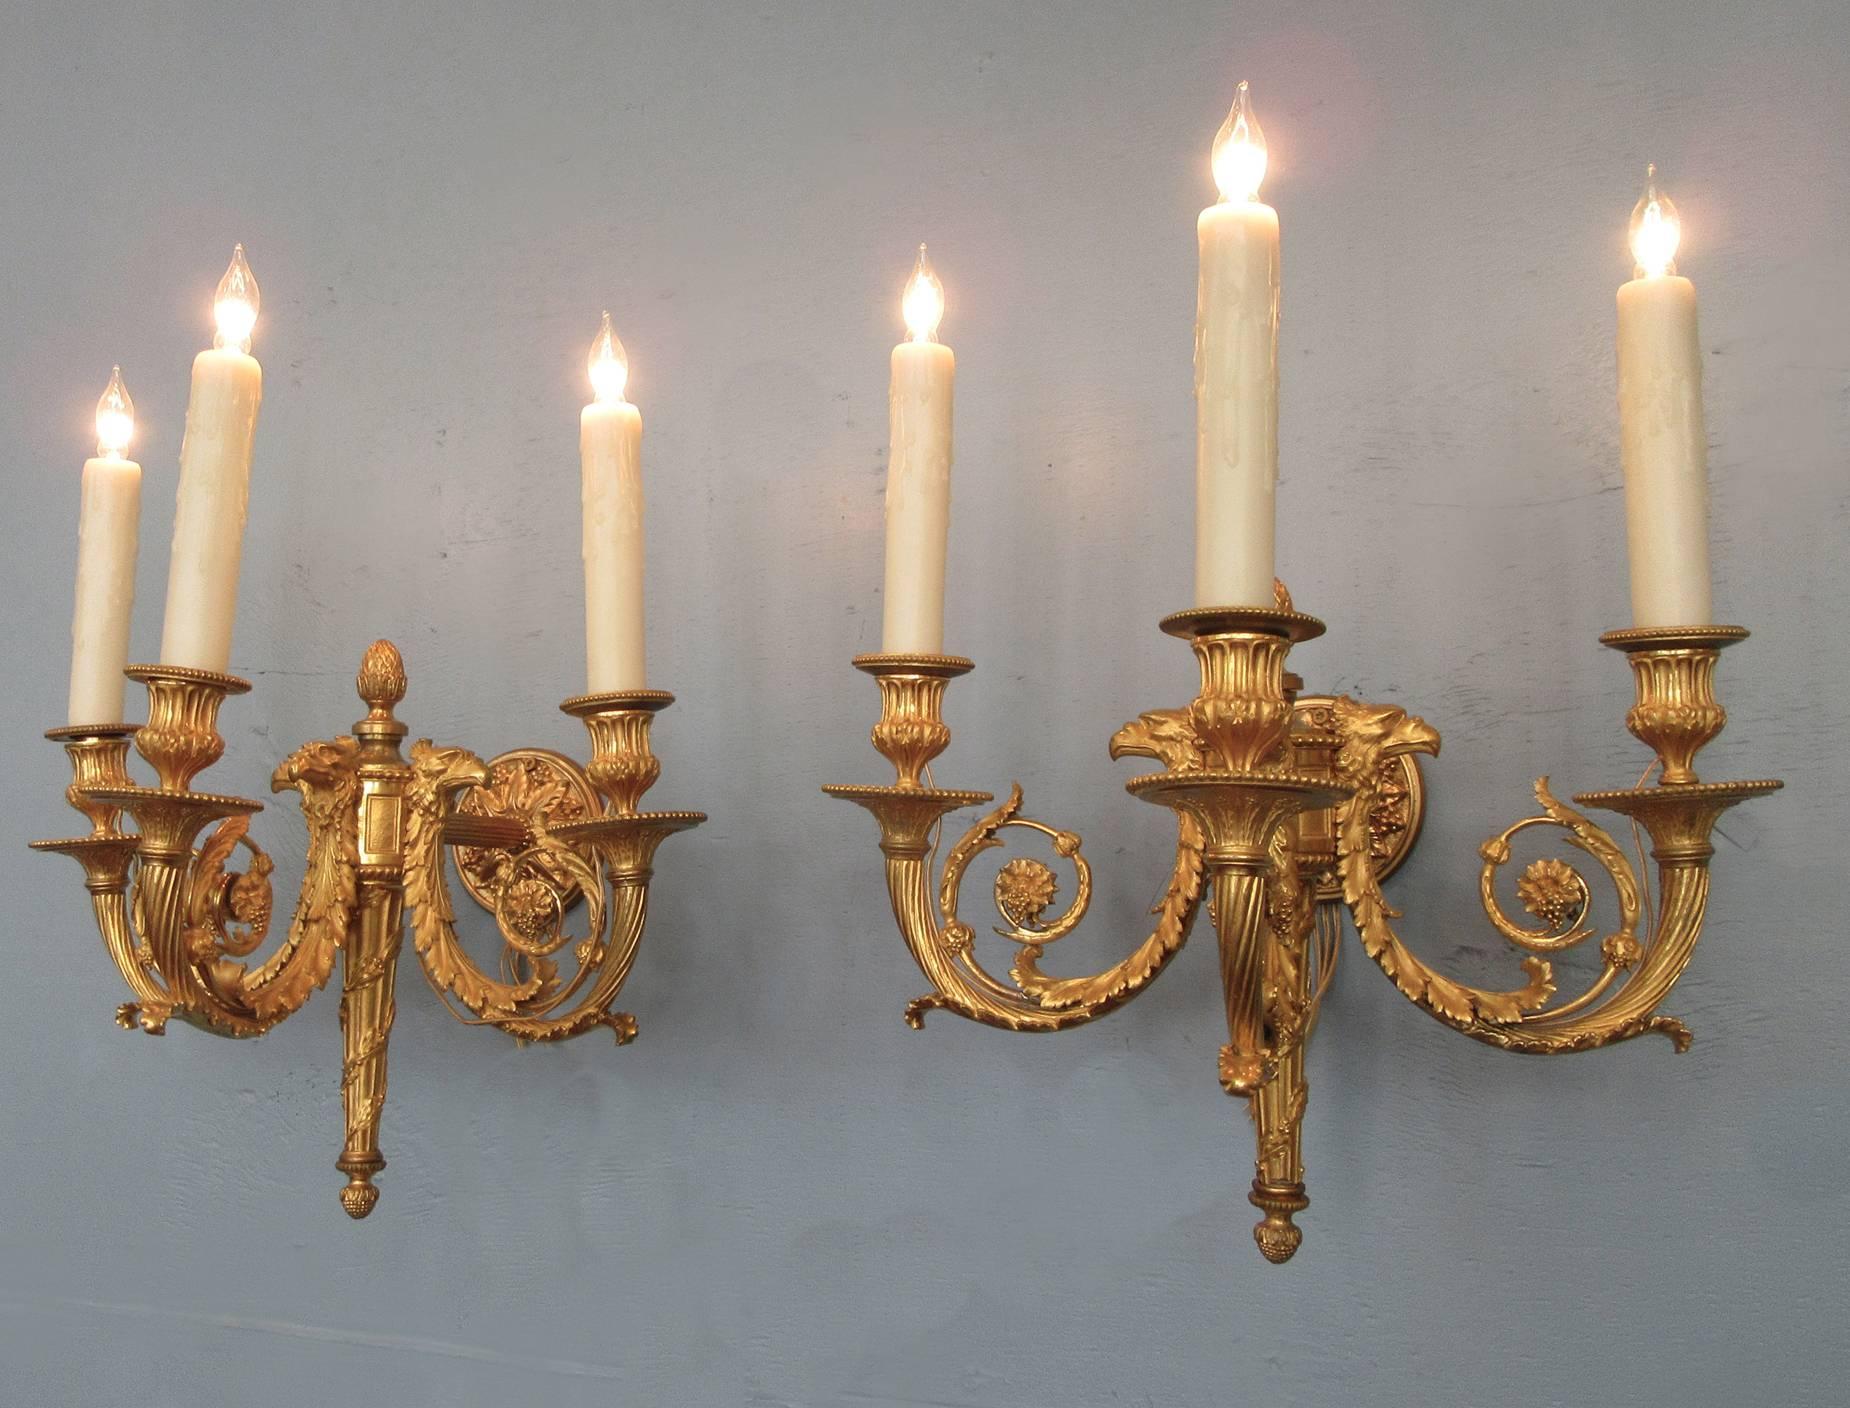 Ein großes Paar außergewöhnlich gut gegossener französischer Empire-Bronze-Doré-Leuchter des 19. Jahrhunderts, um 1810, mit Köchersockel mit drei Kerzenarmen, fein detaillierten Adlerköpfen, Blattwerk und Traubenmotiven.